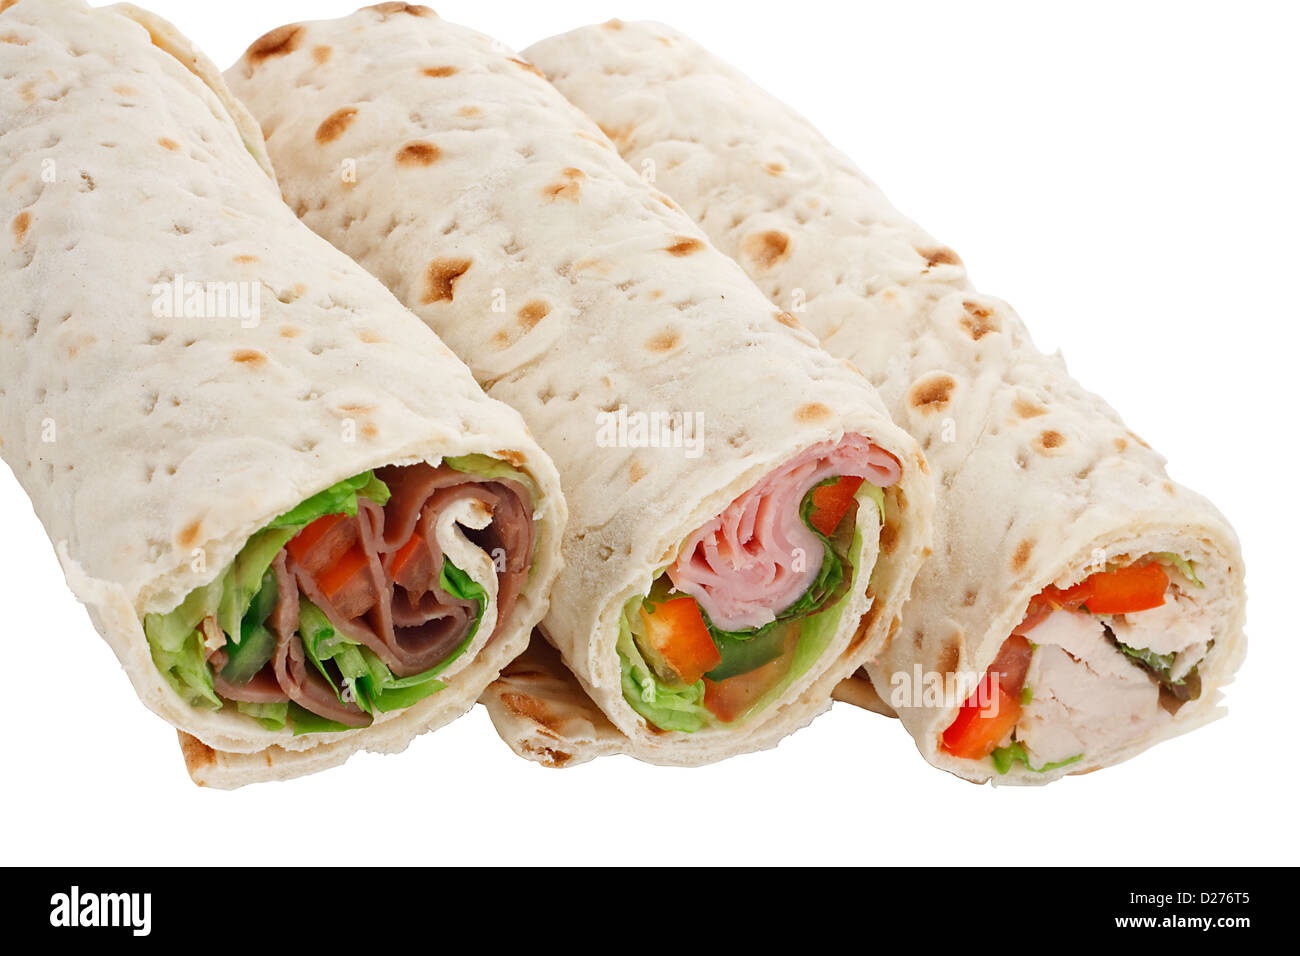 Un snack ou un déjeuner léger, wraps sandwichs avec divers matériaux Banque D'Images